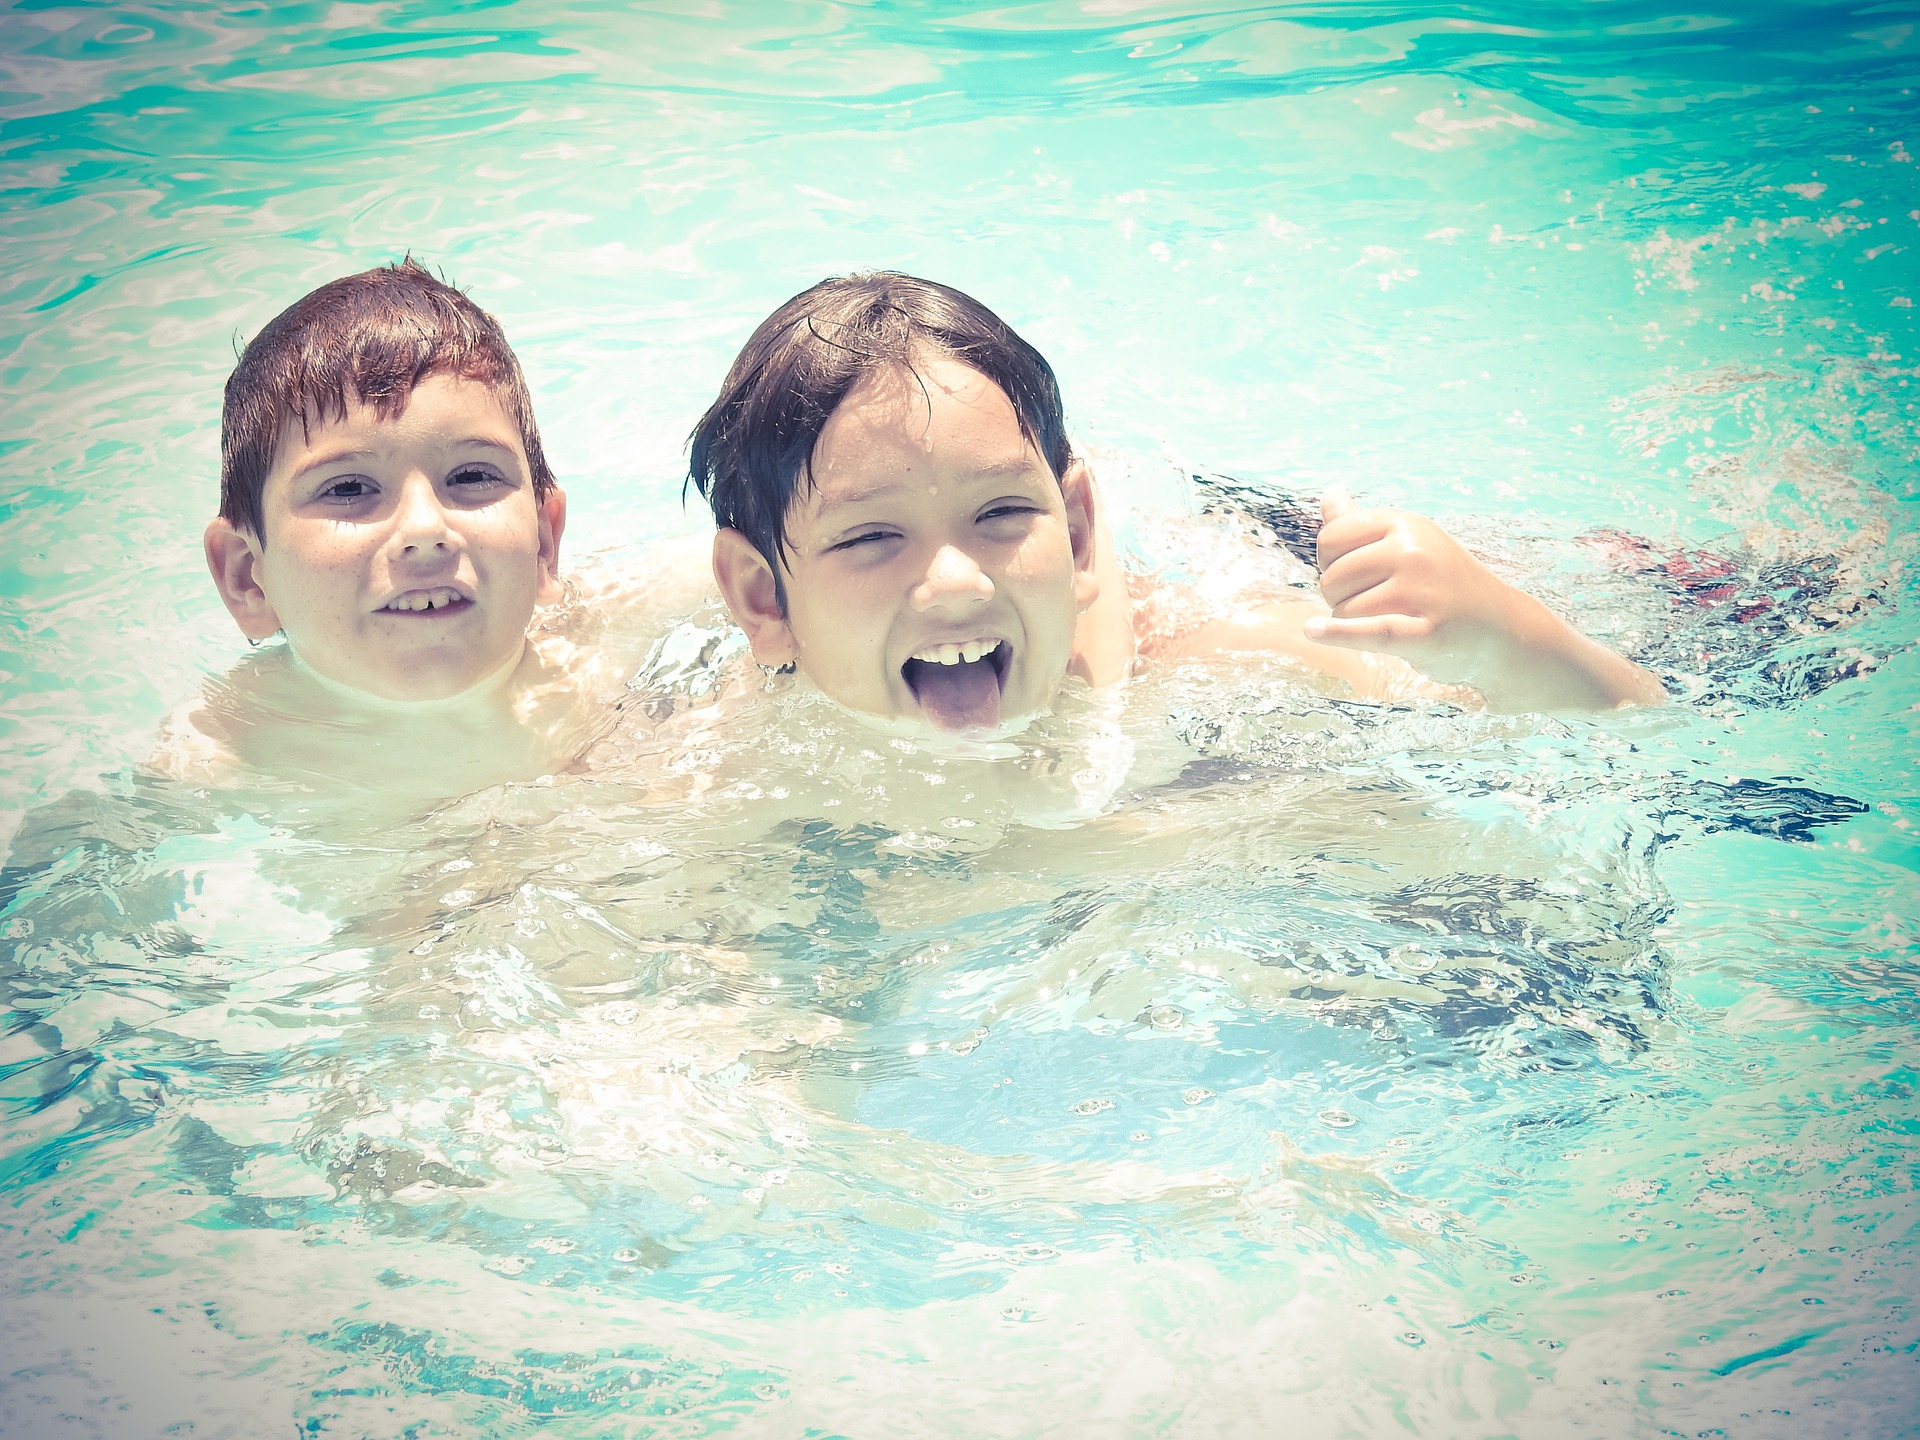 Défi à faire dans une piscine : quels jeux ? – Piscines Abris Design